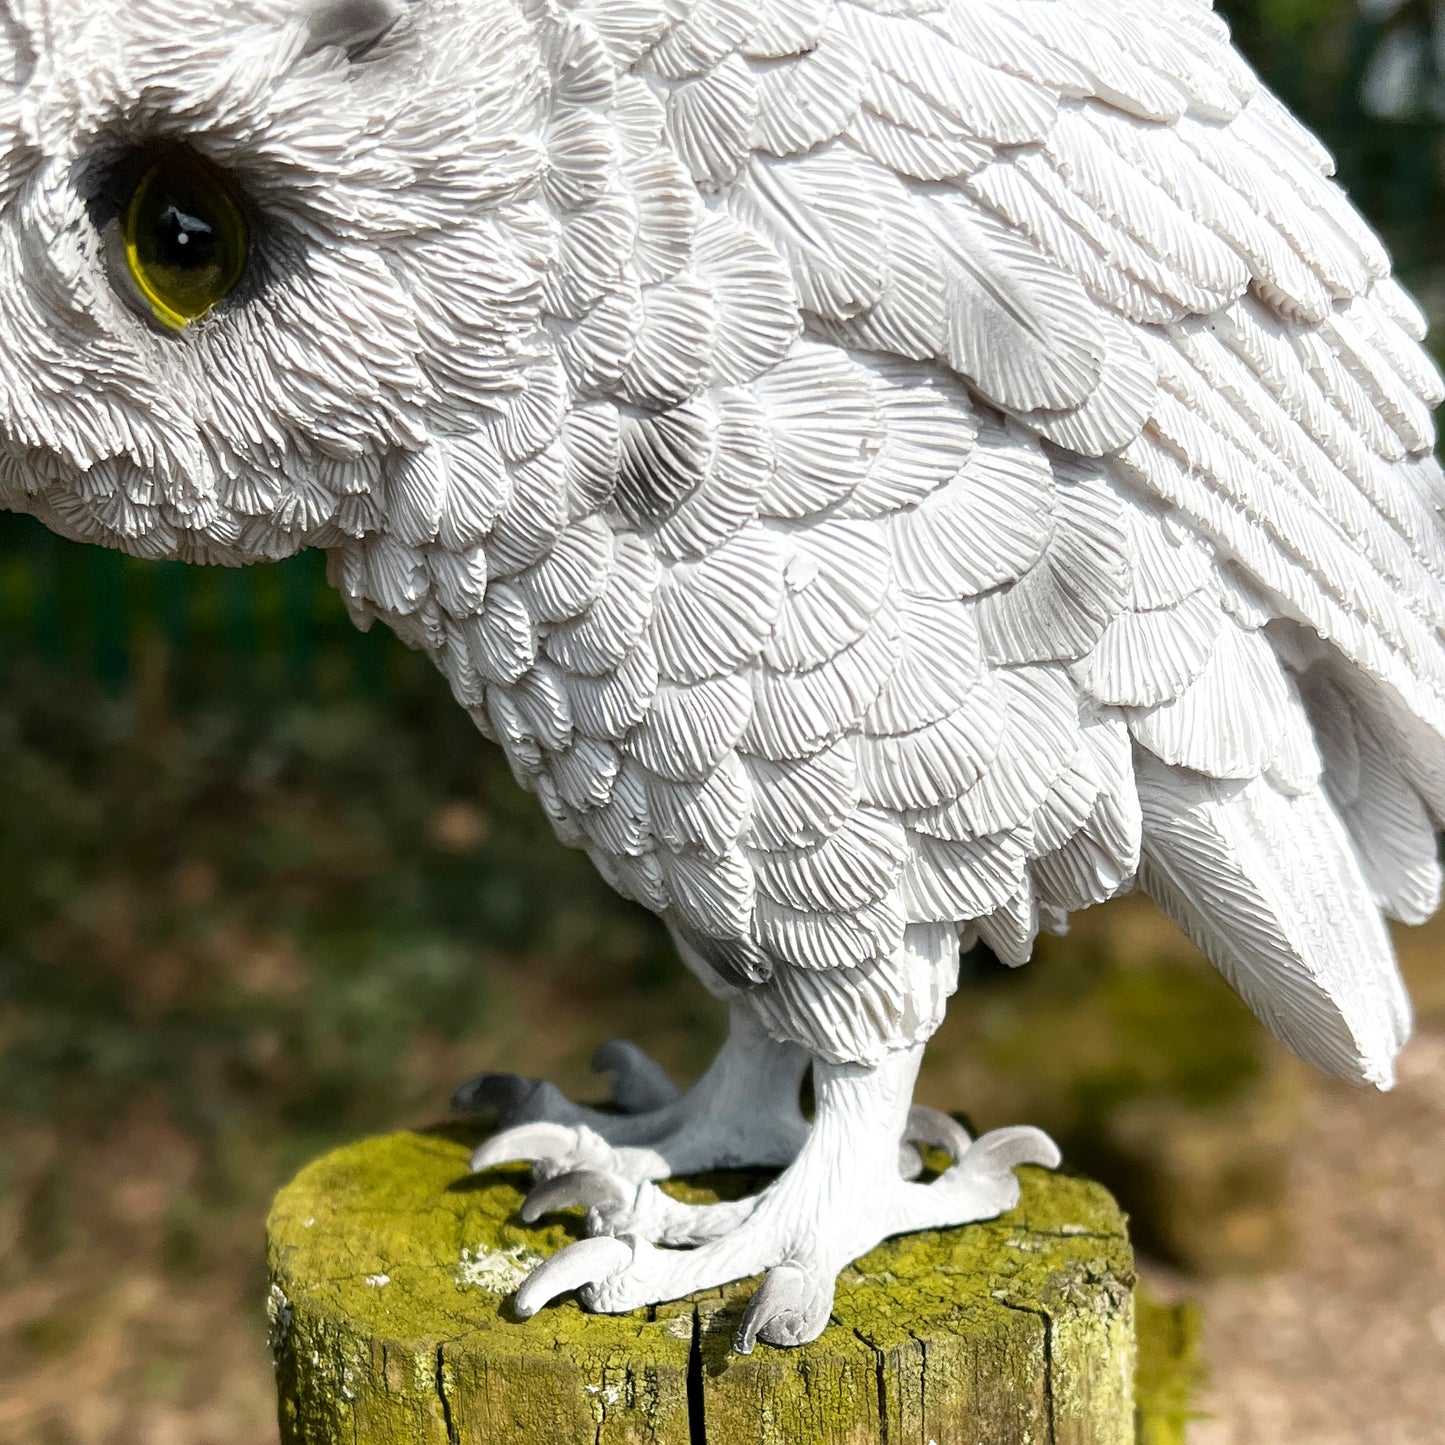 White Owl Ornament - Resin